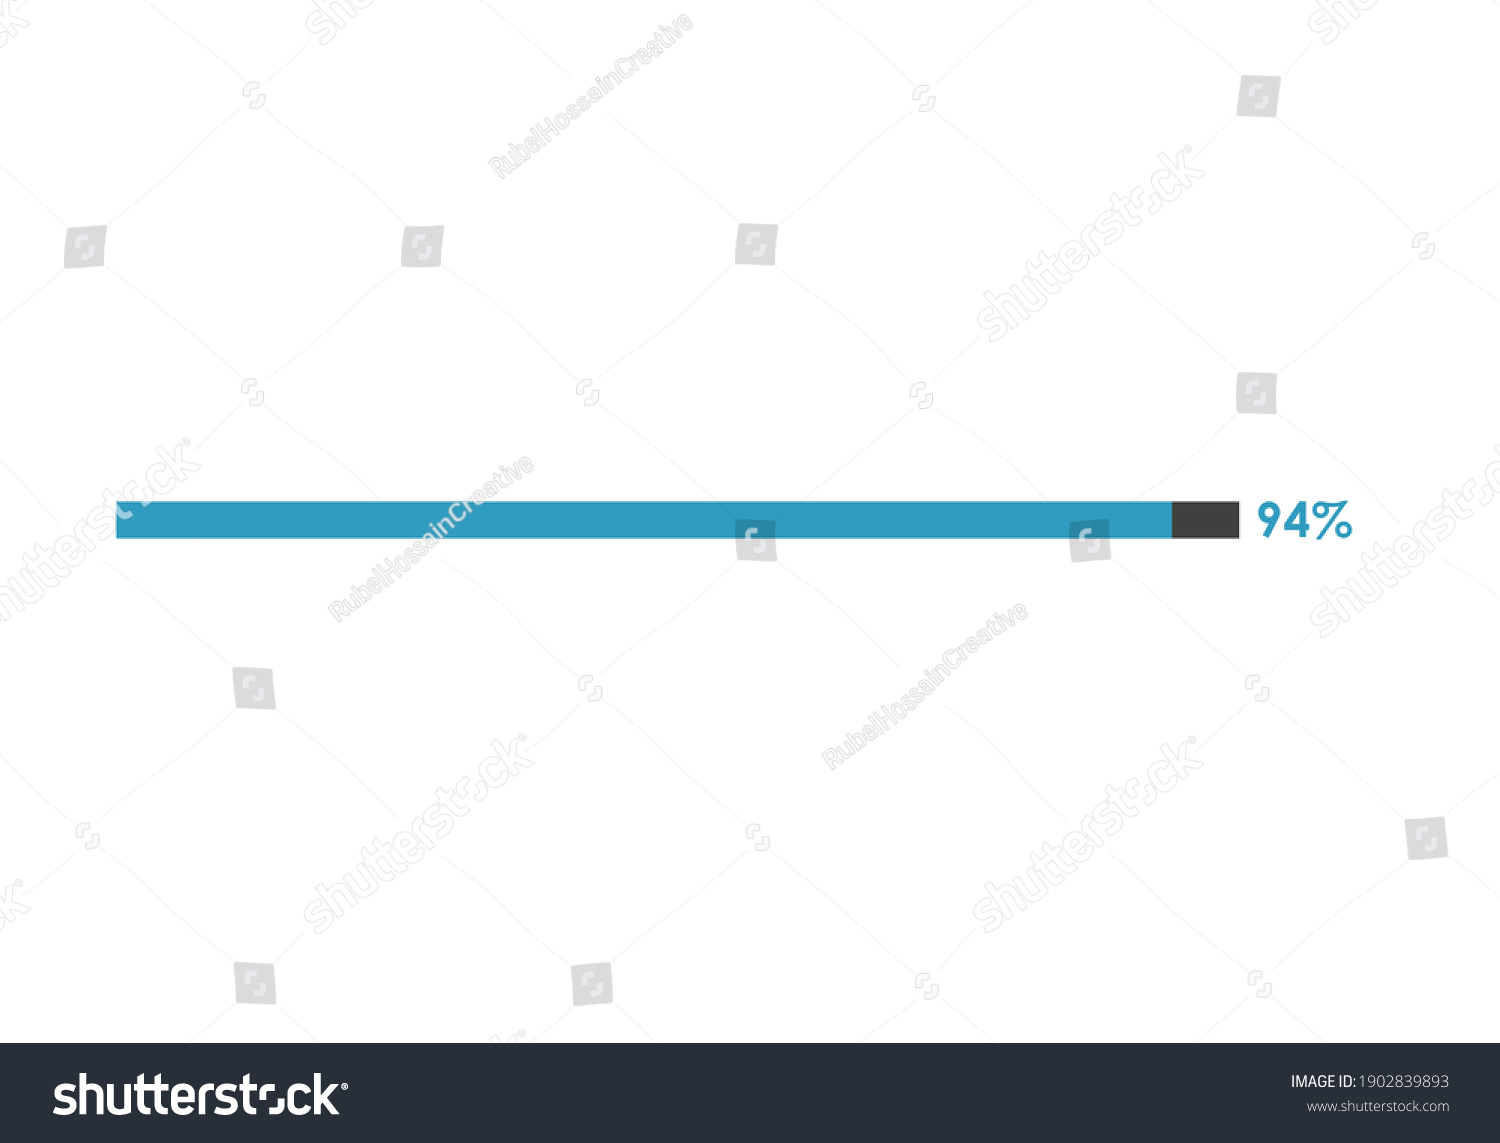 SVG of 94% loading icon, 94% Progress bar vector illustration svg